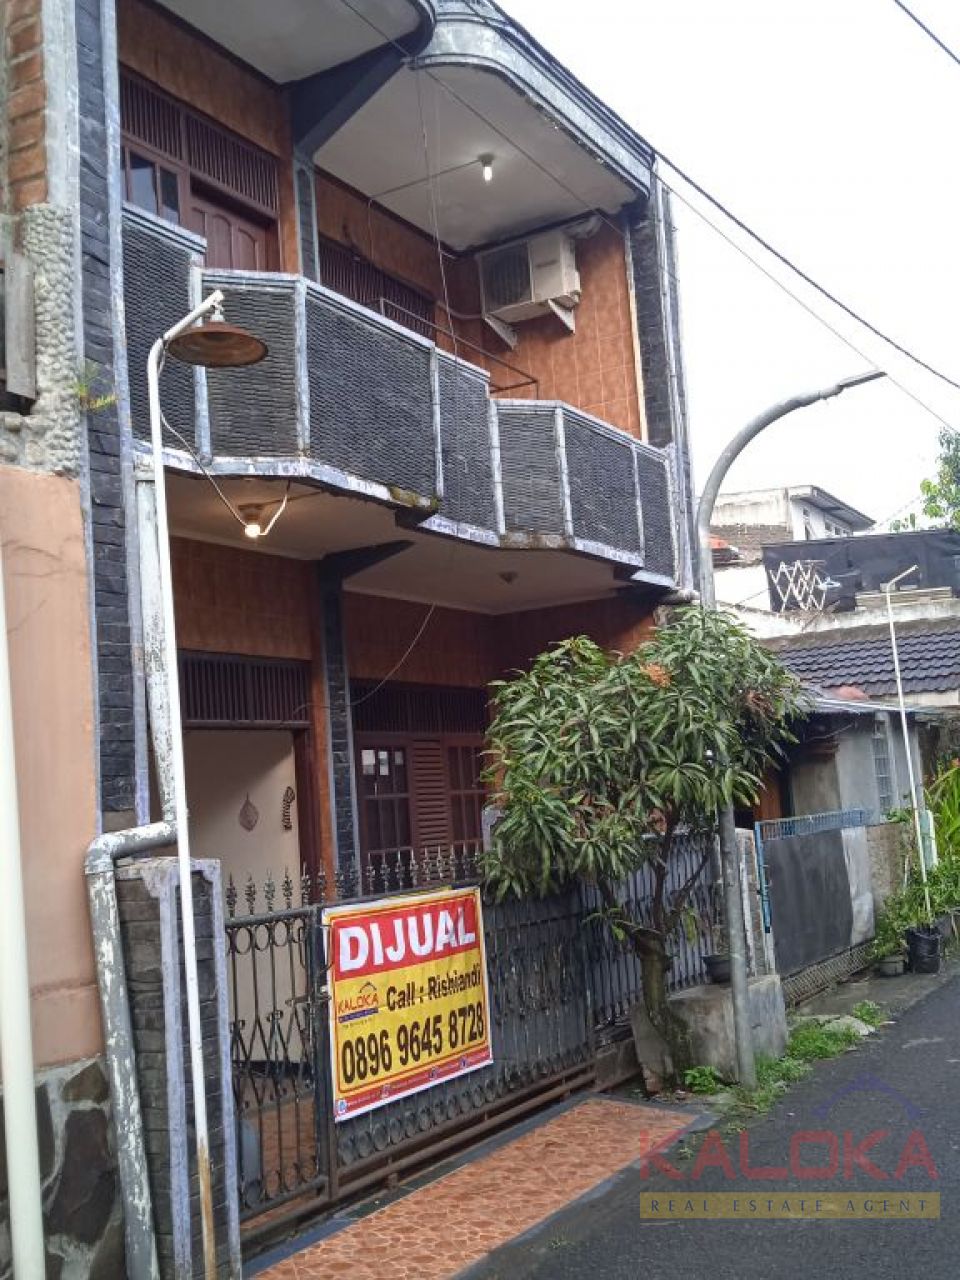 Jual rumah murah siap huni di Riung Bandung 500 jutaan